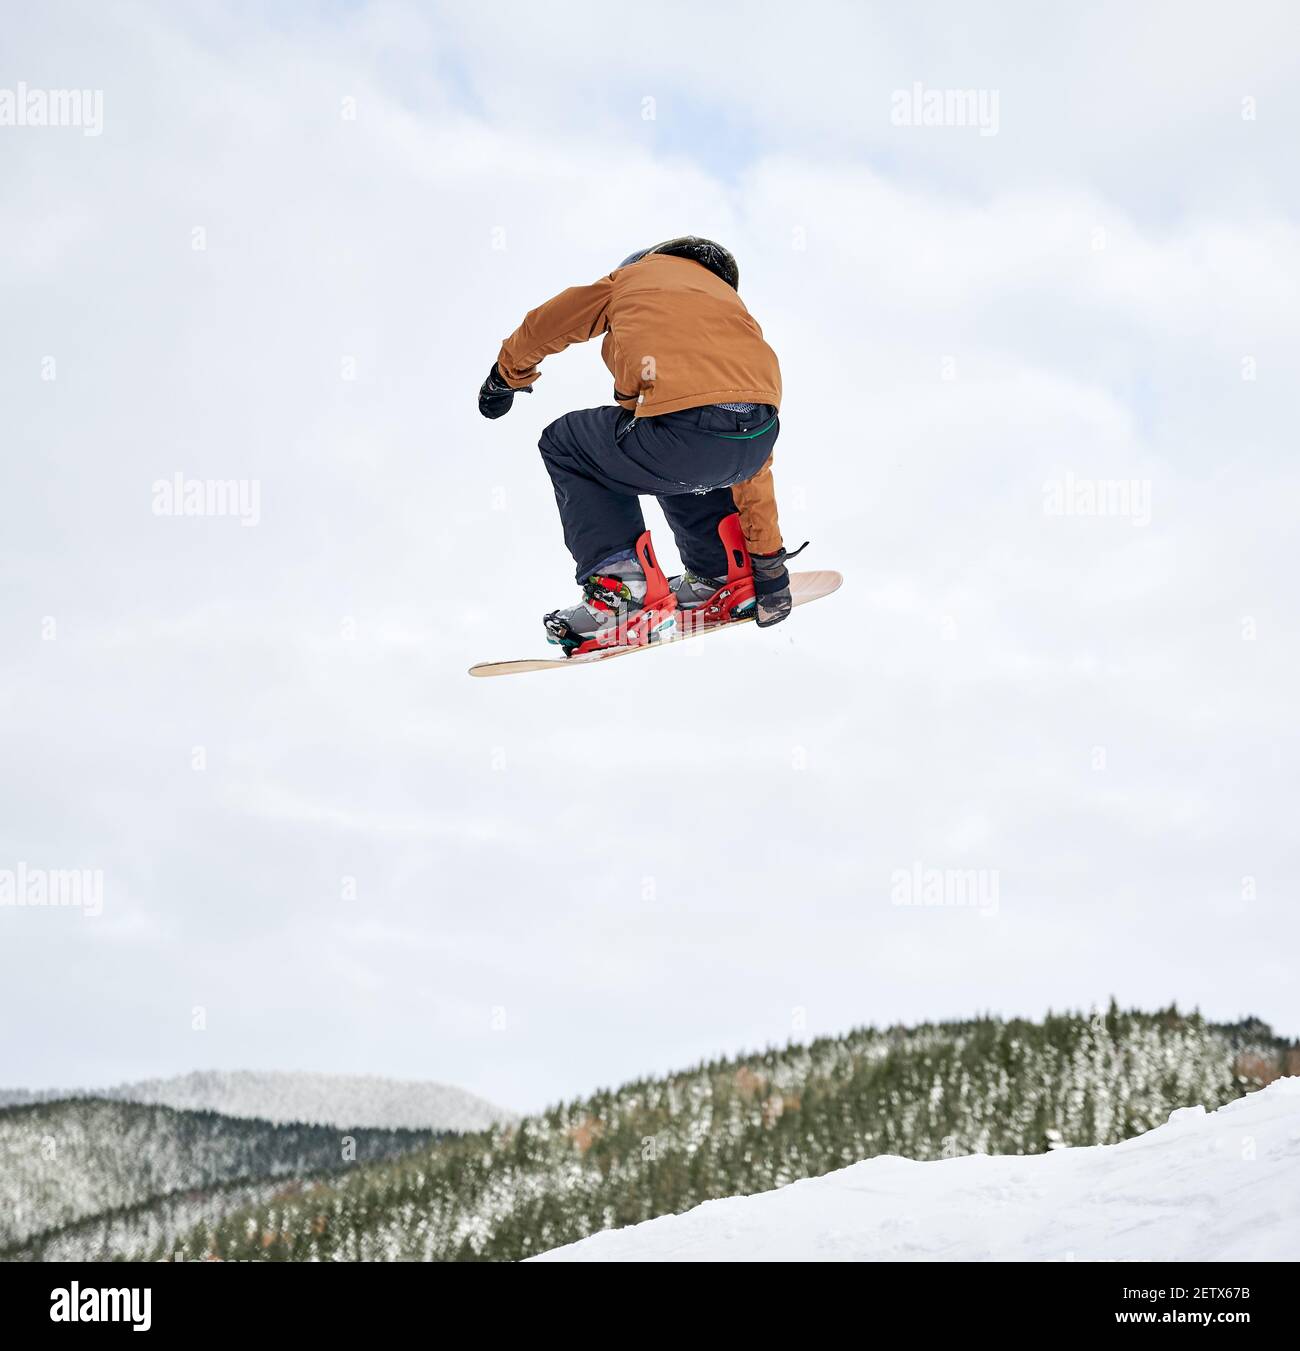 Vista posteriore dello snowboarder ragazzo in giacca invernale e casco che salta in aria. Adorabile bambino che fa saltare con snowboard mentre scivola giù collina innevata nelle montagne invernali. Concetto di sport invernale estremo Foto Stock